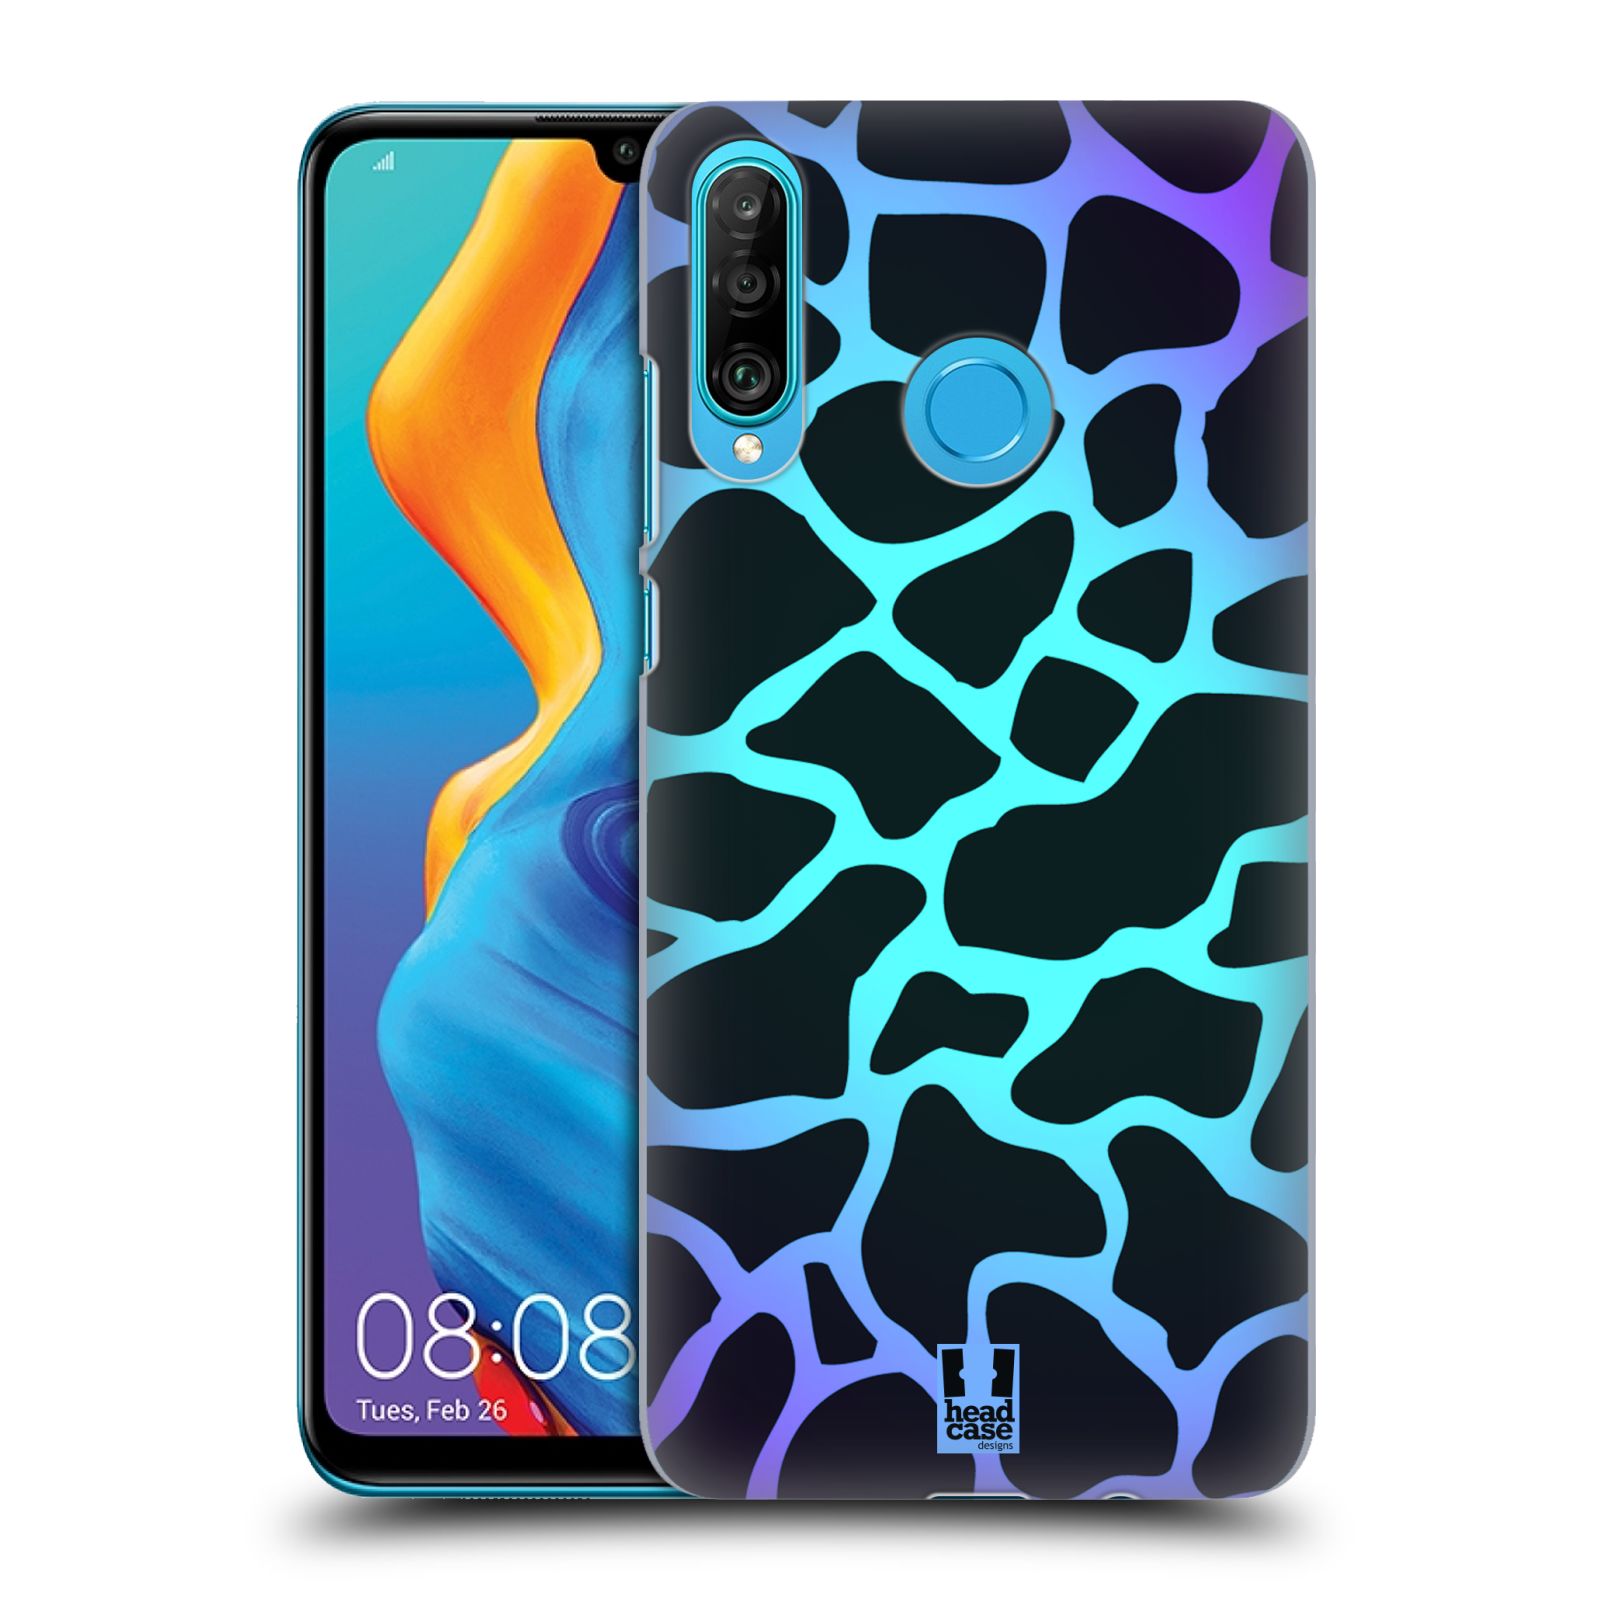 Pouzdro na mobil Huawei P30 LITE - HEAD CASE - vzor Divočina zvíře tyrkysová žirafa magický vzor